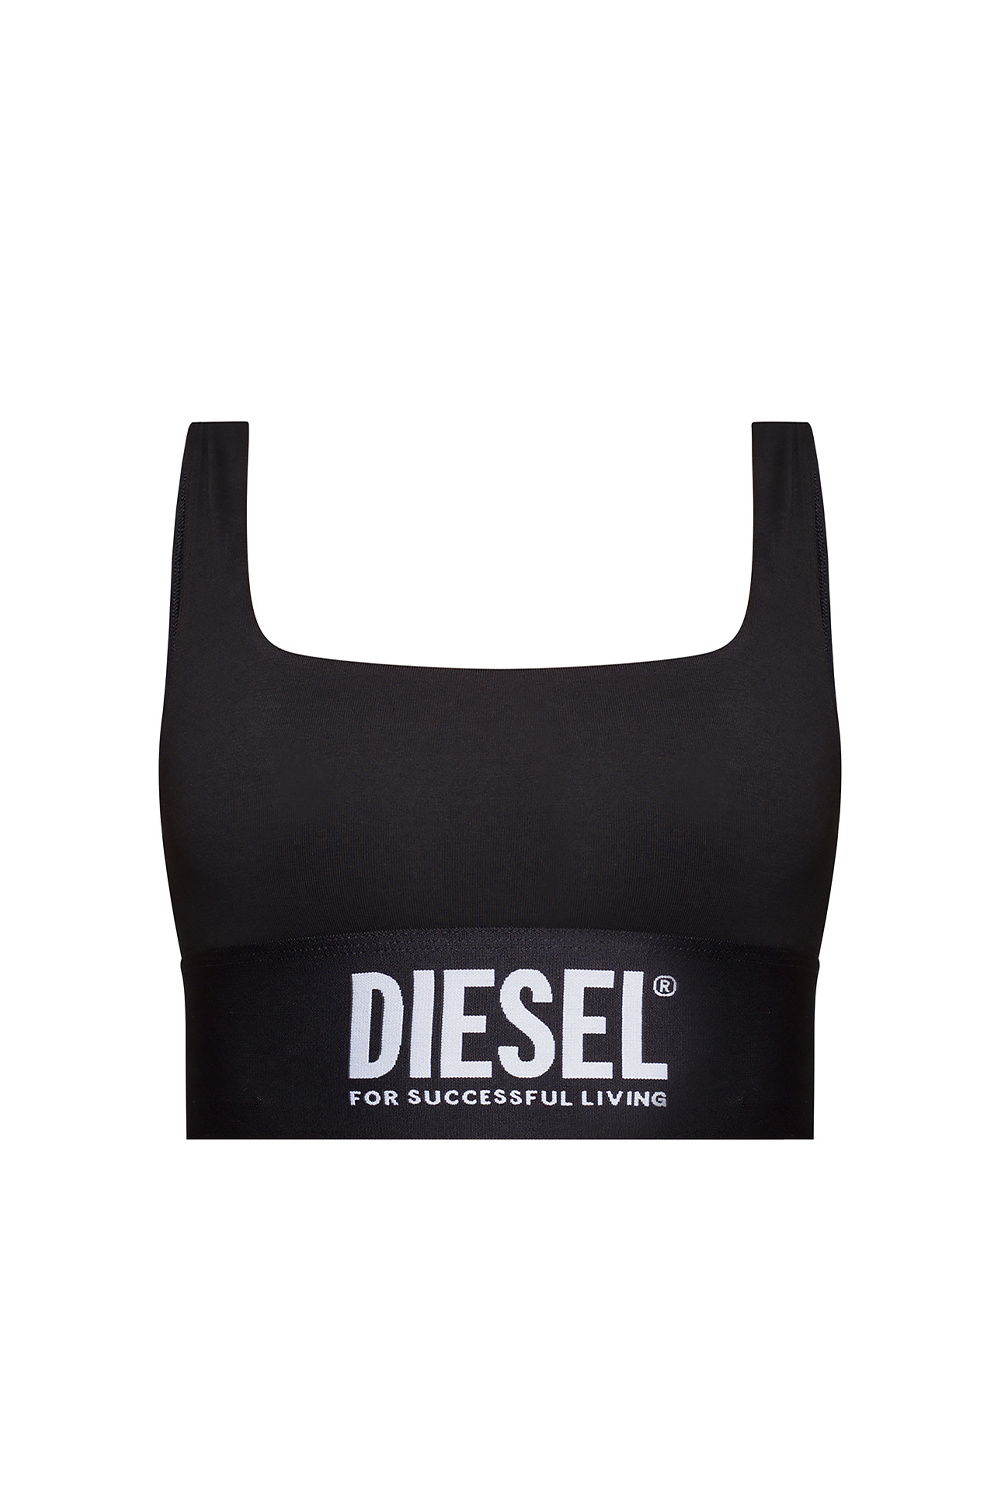 Diesel Bra with logo